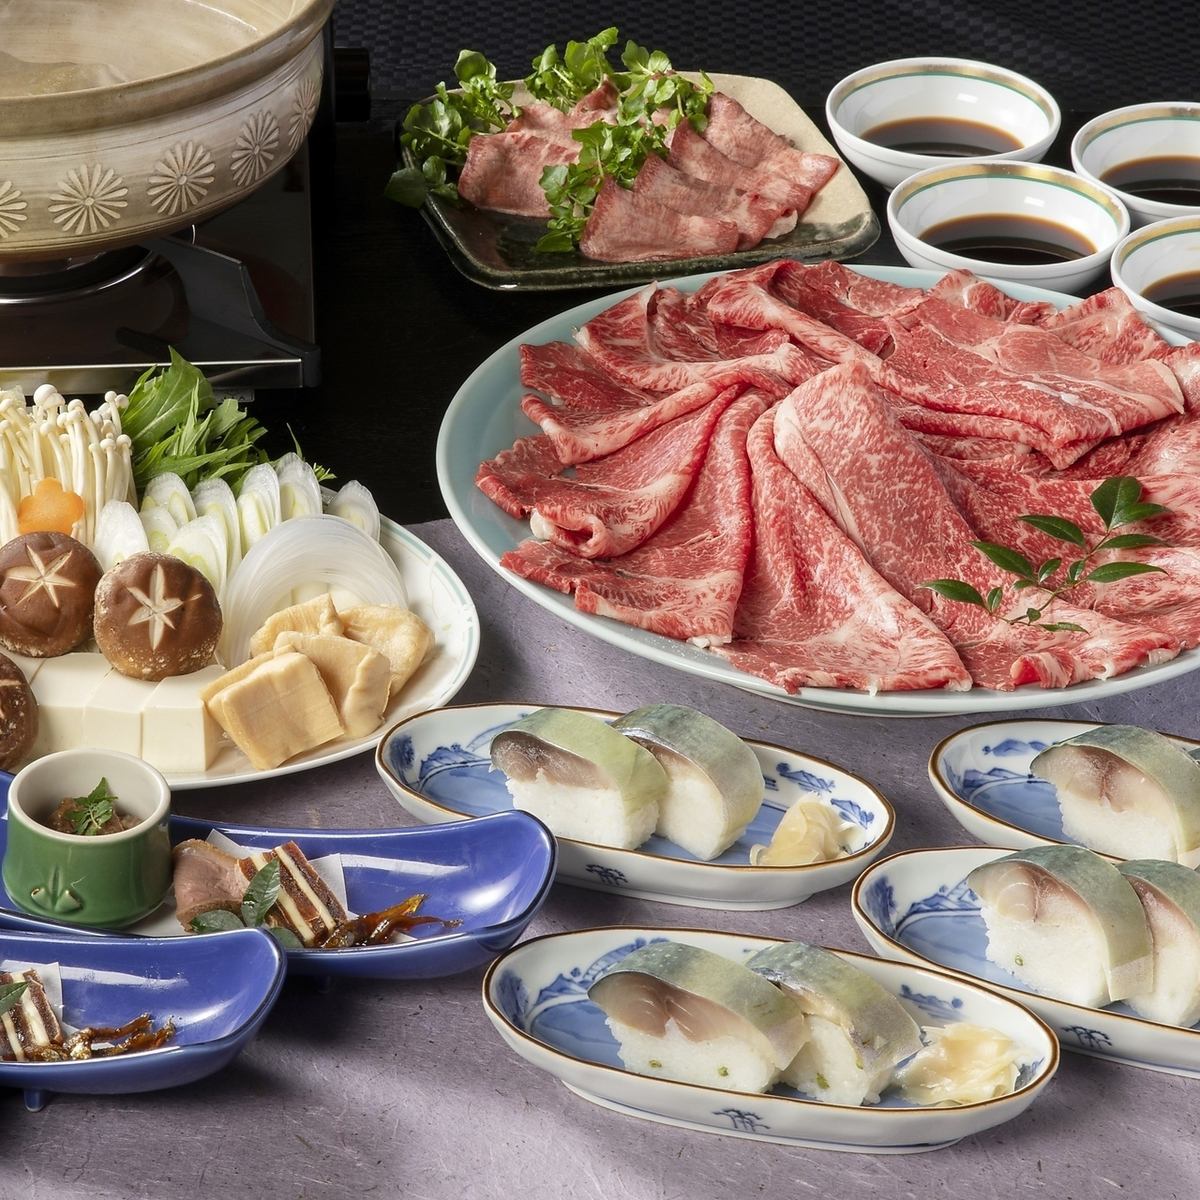 享用近江牛、元山牛的寿喜烧/涮锅。还有已有112年历史的鲭鱼寿司。